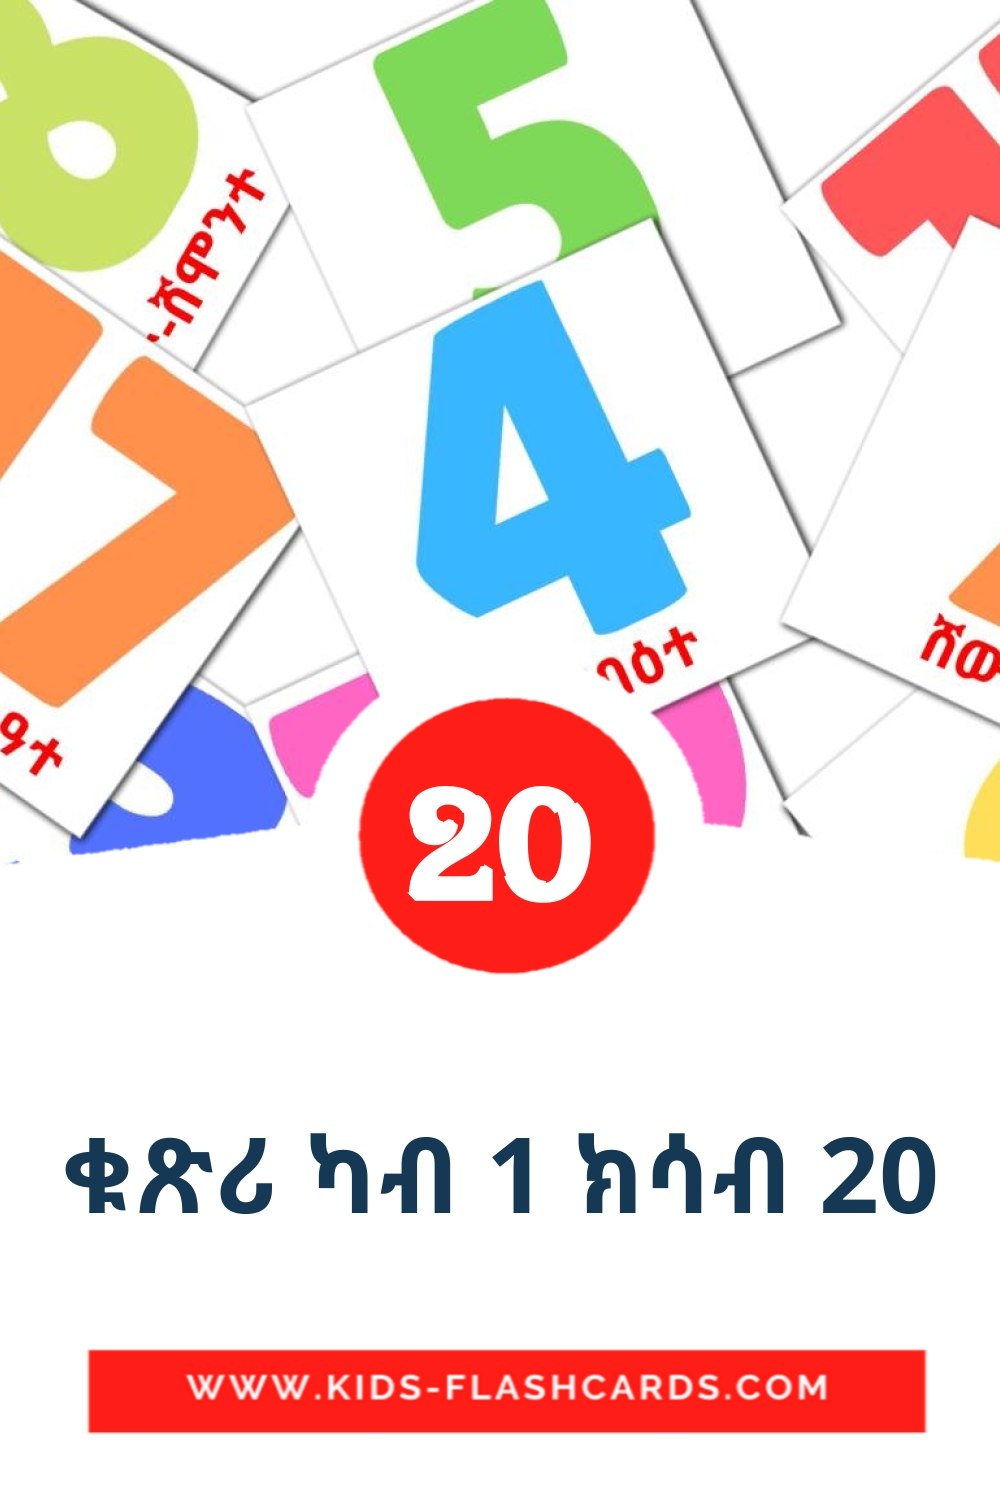 20 tarjetas didacticas de ቁጽሪ ካብ 1 ክሳብ 20 para el jardín de infancia en tigrigna(Eritrea)